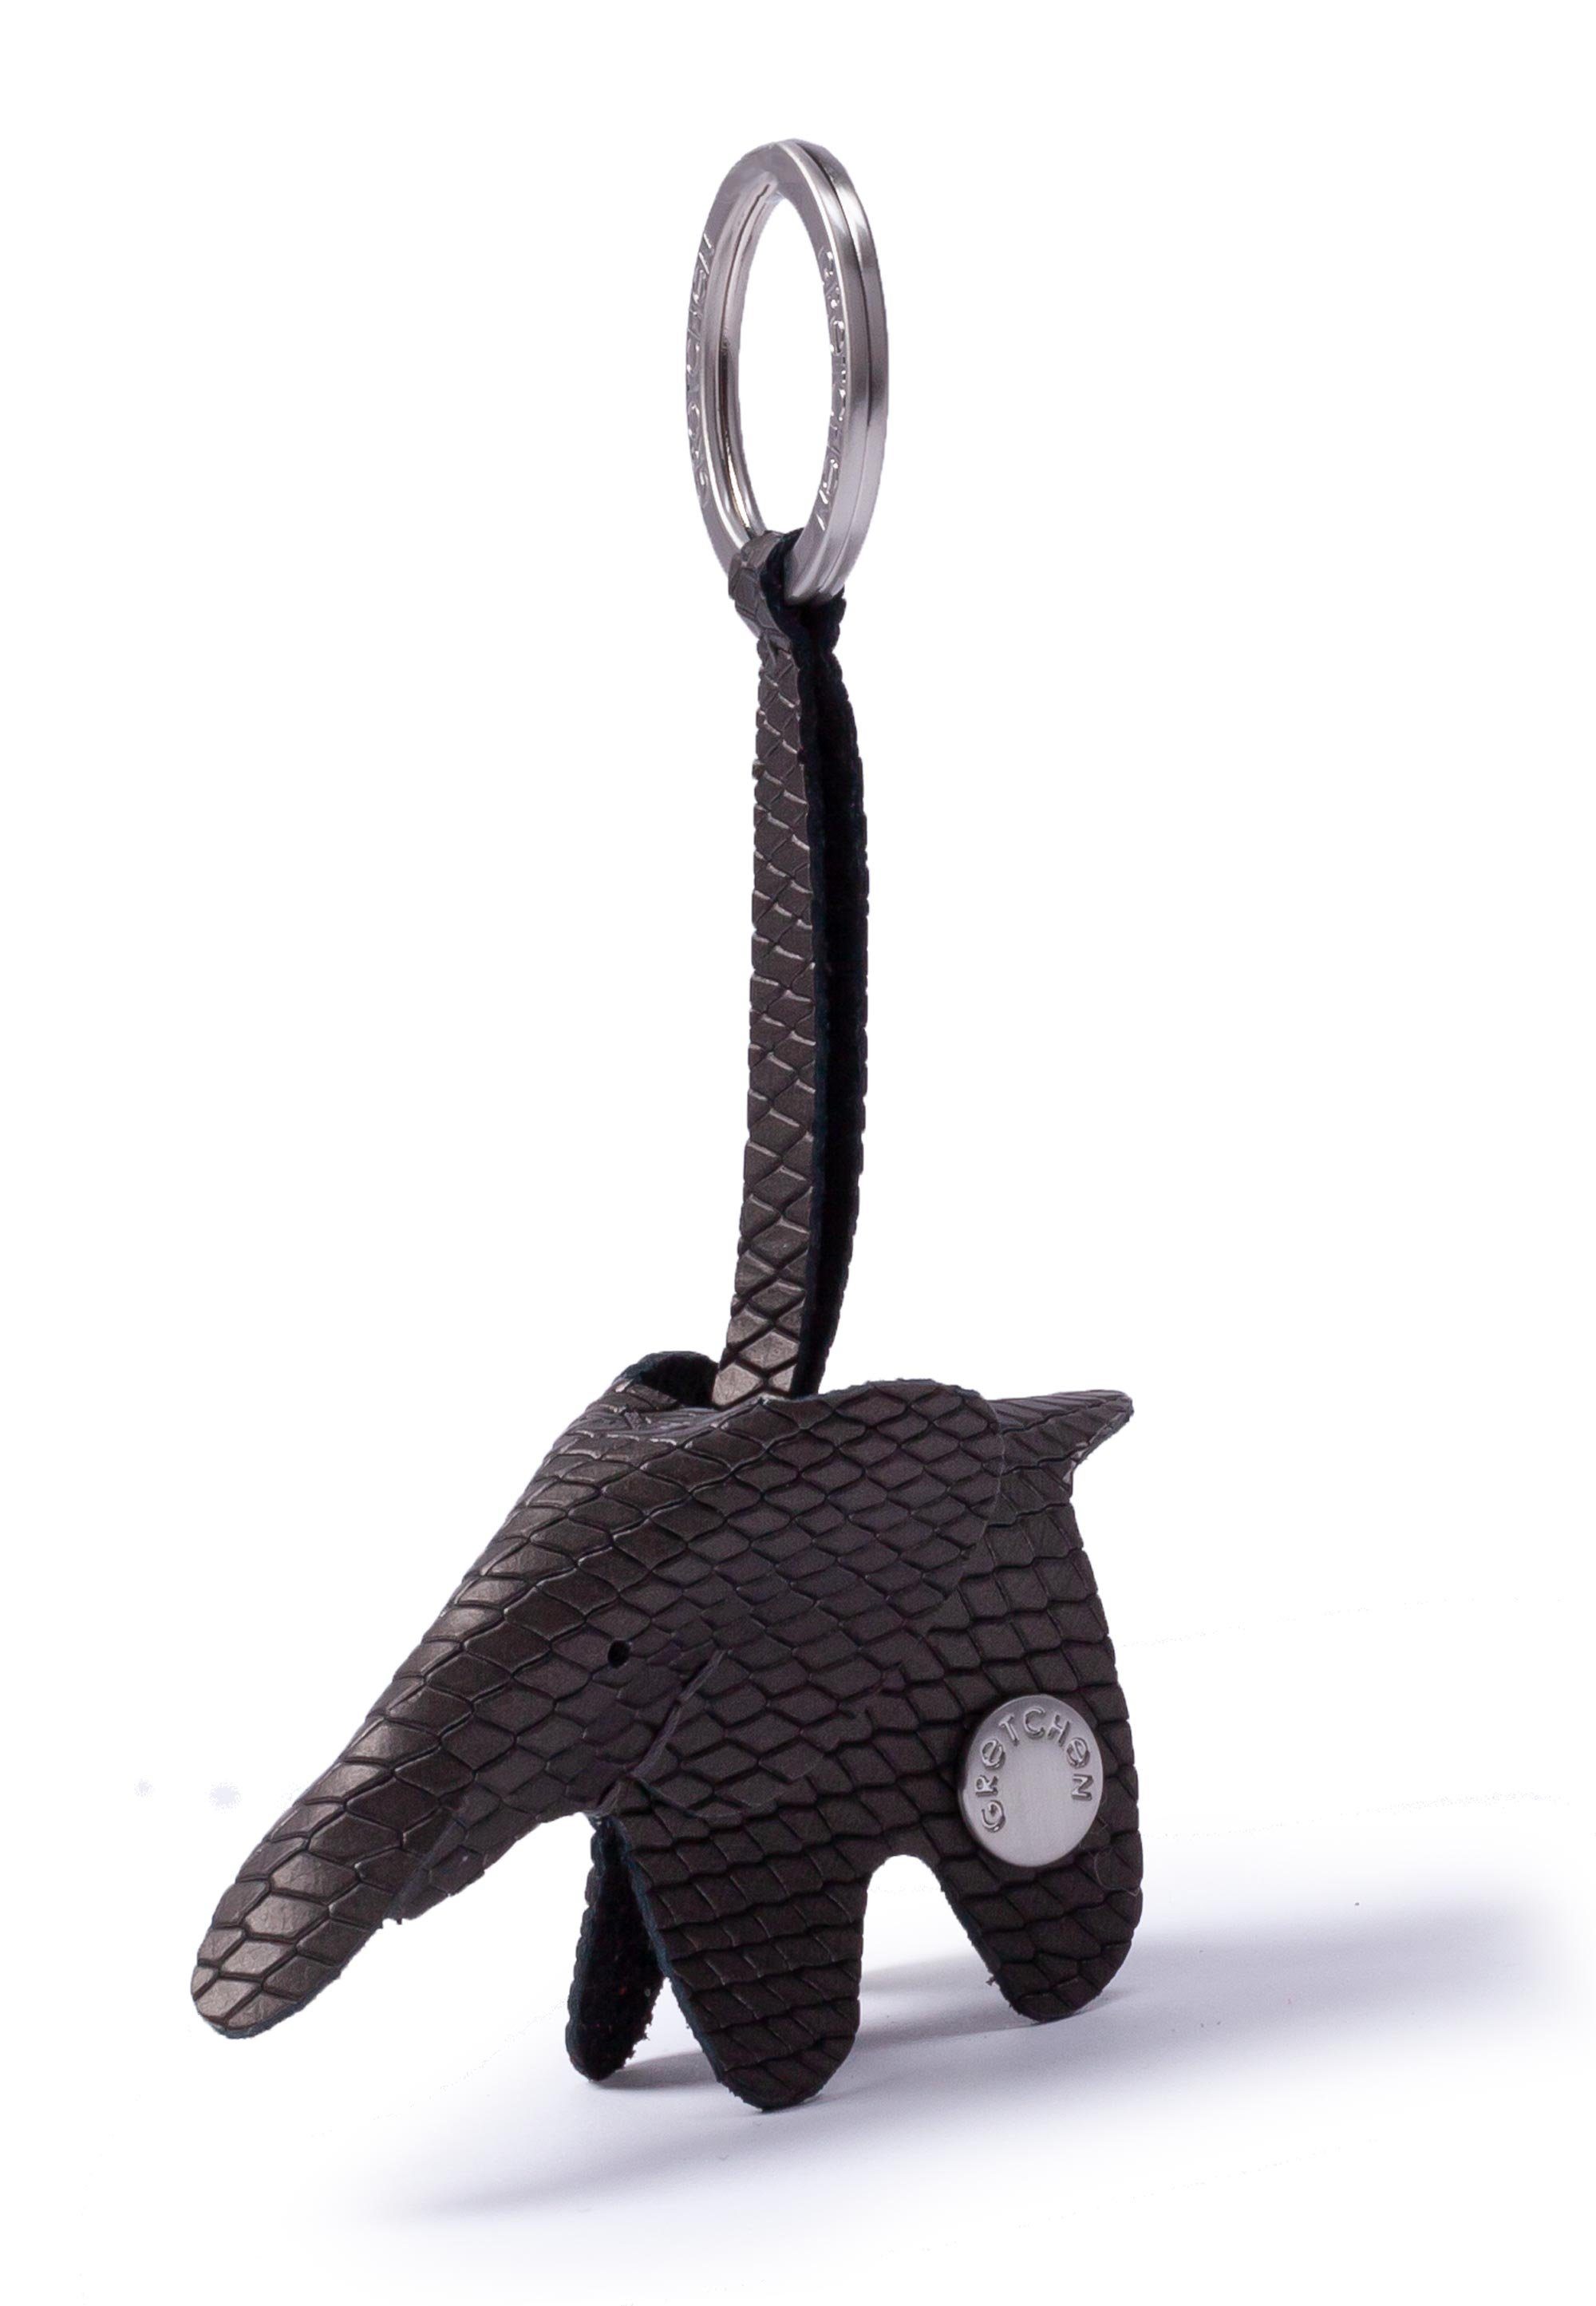 GRETCHEN Schlüsselanhänger Elephant, in Form eines Elefanten schwarz-silberfarben | Schlüsselanhänger